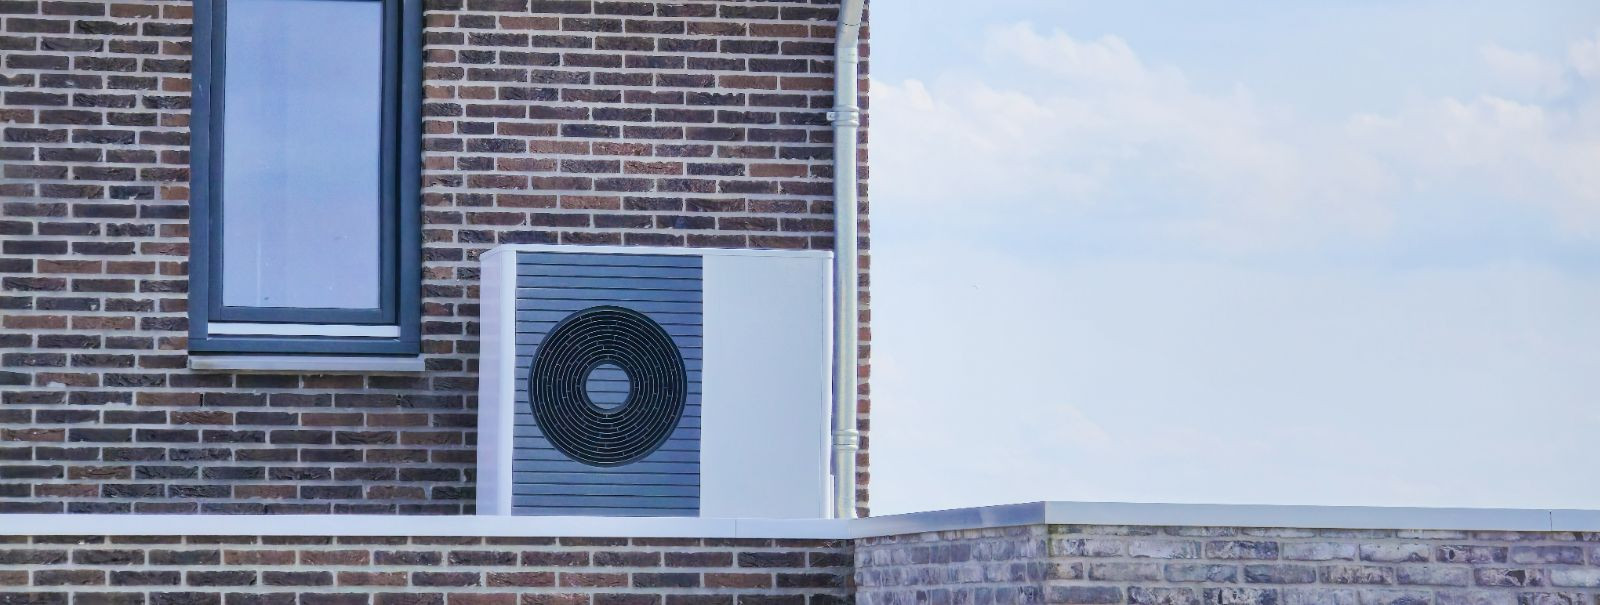 Ventilatsioon on värske õhu tahtlik sissetoomine ruumi ja see on kriitilise tähtsusega siseõhu kvaliteedi säilitamiseks. Kaasaegses ehituses ei ole korralik ven